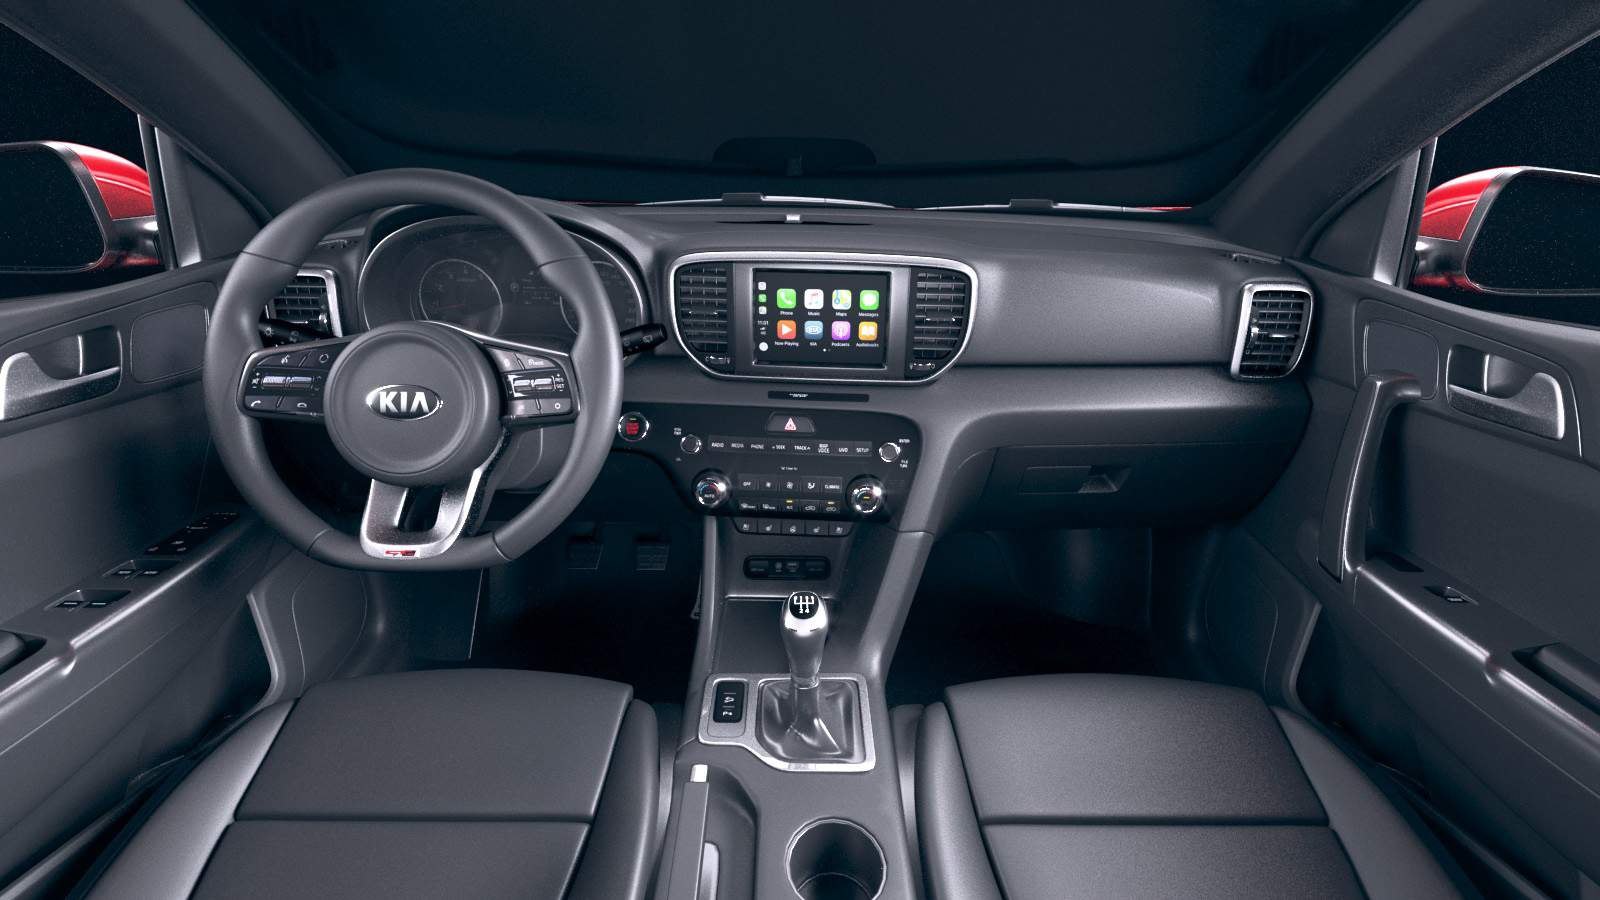 Киа к3 комплектации. Kia Sportage 2019 Interior. Kia Sportage 2019 салон. Kia Sportage 2019 Luxe комплектация. Kia Sportage 2018 комплектации.